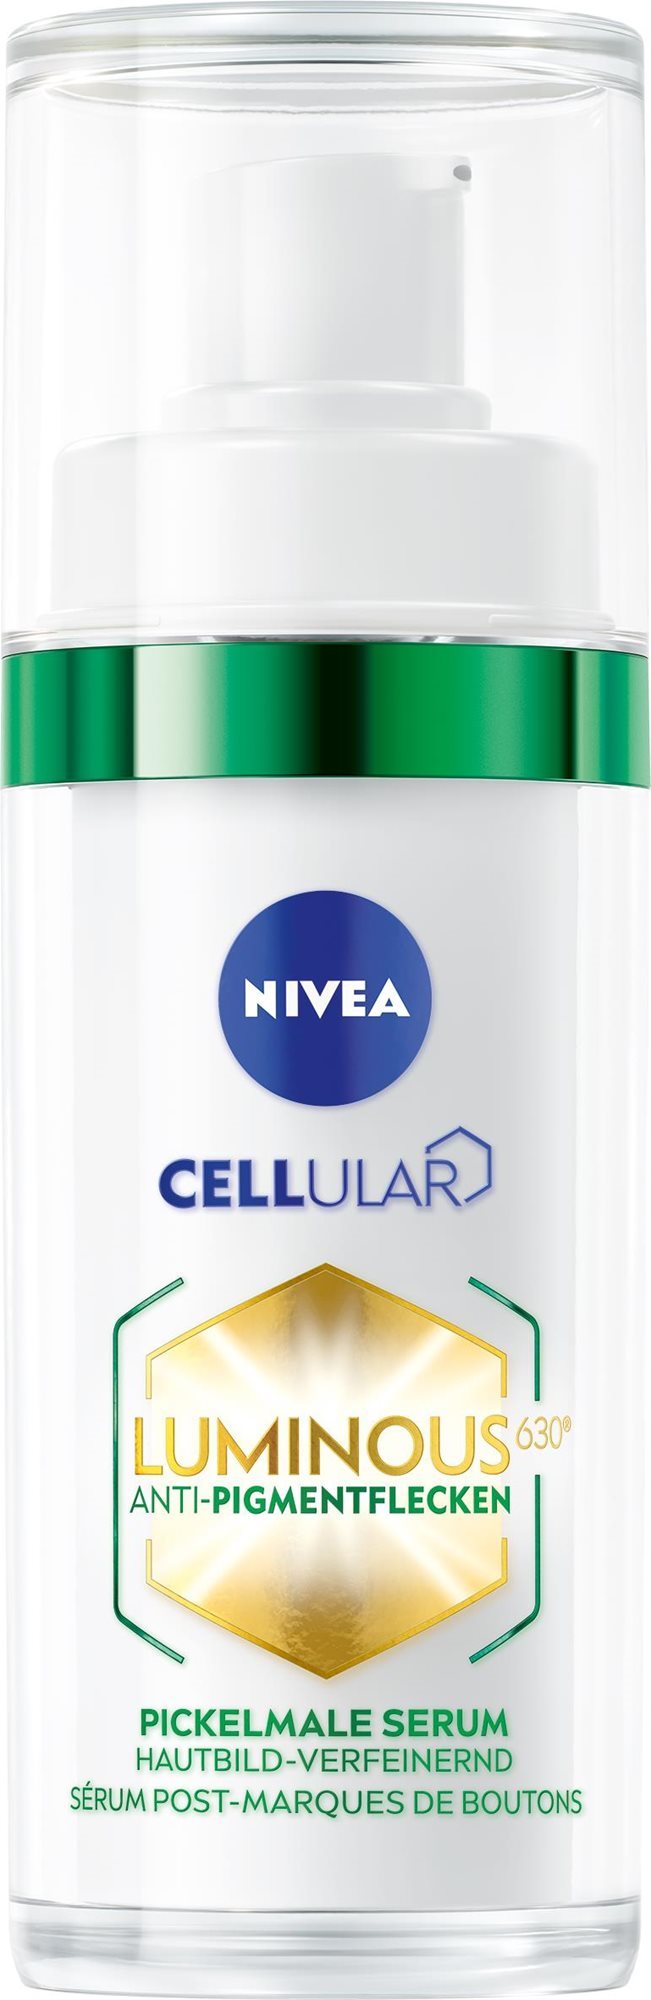 NIVEA Cellular Luminous 630 Aknék utáni sötét foltok ellen 30 ml